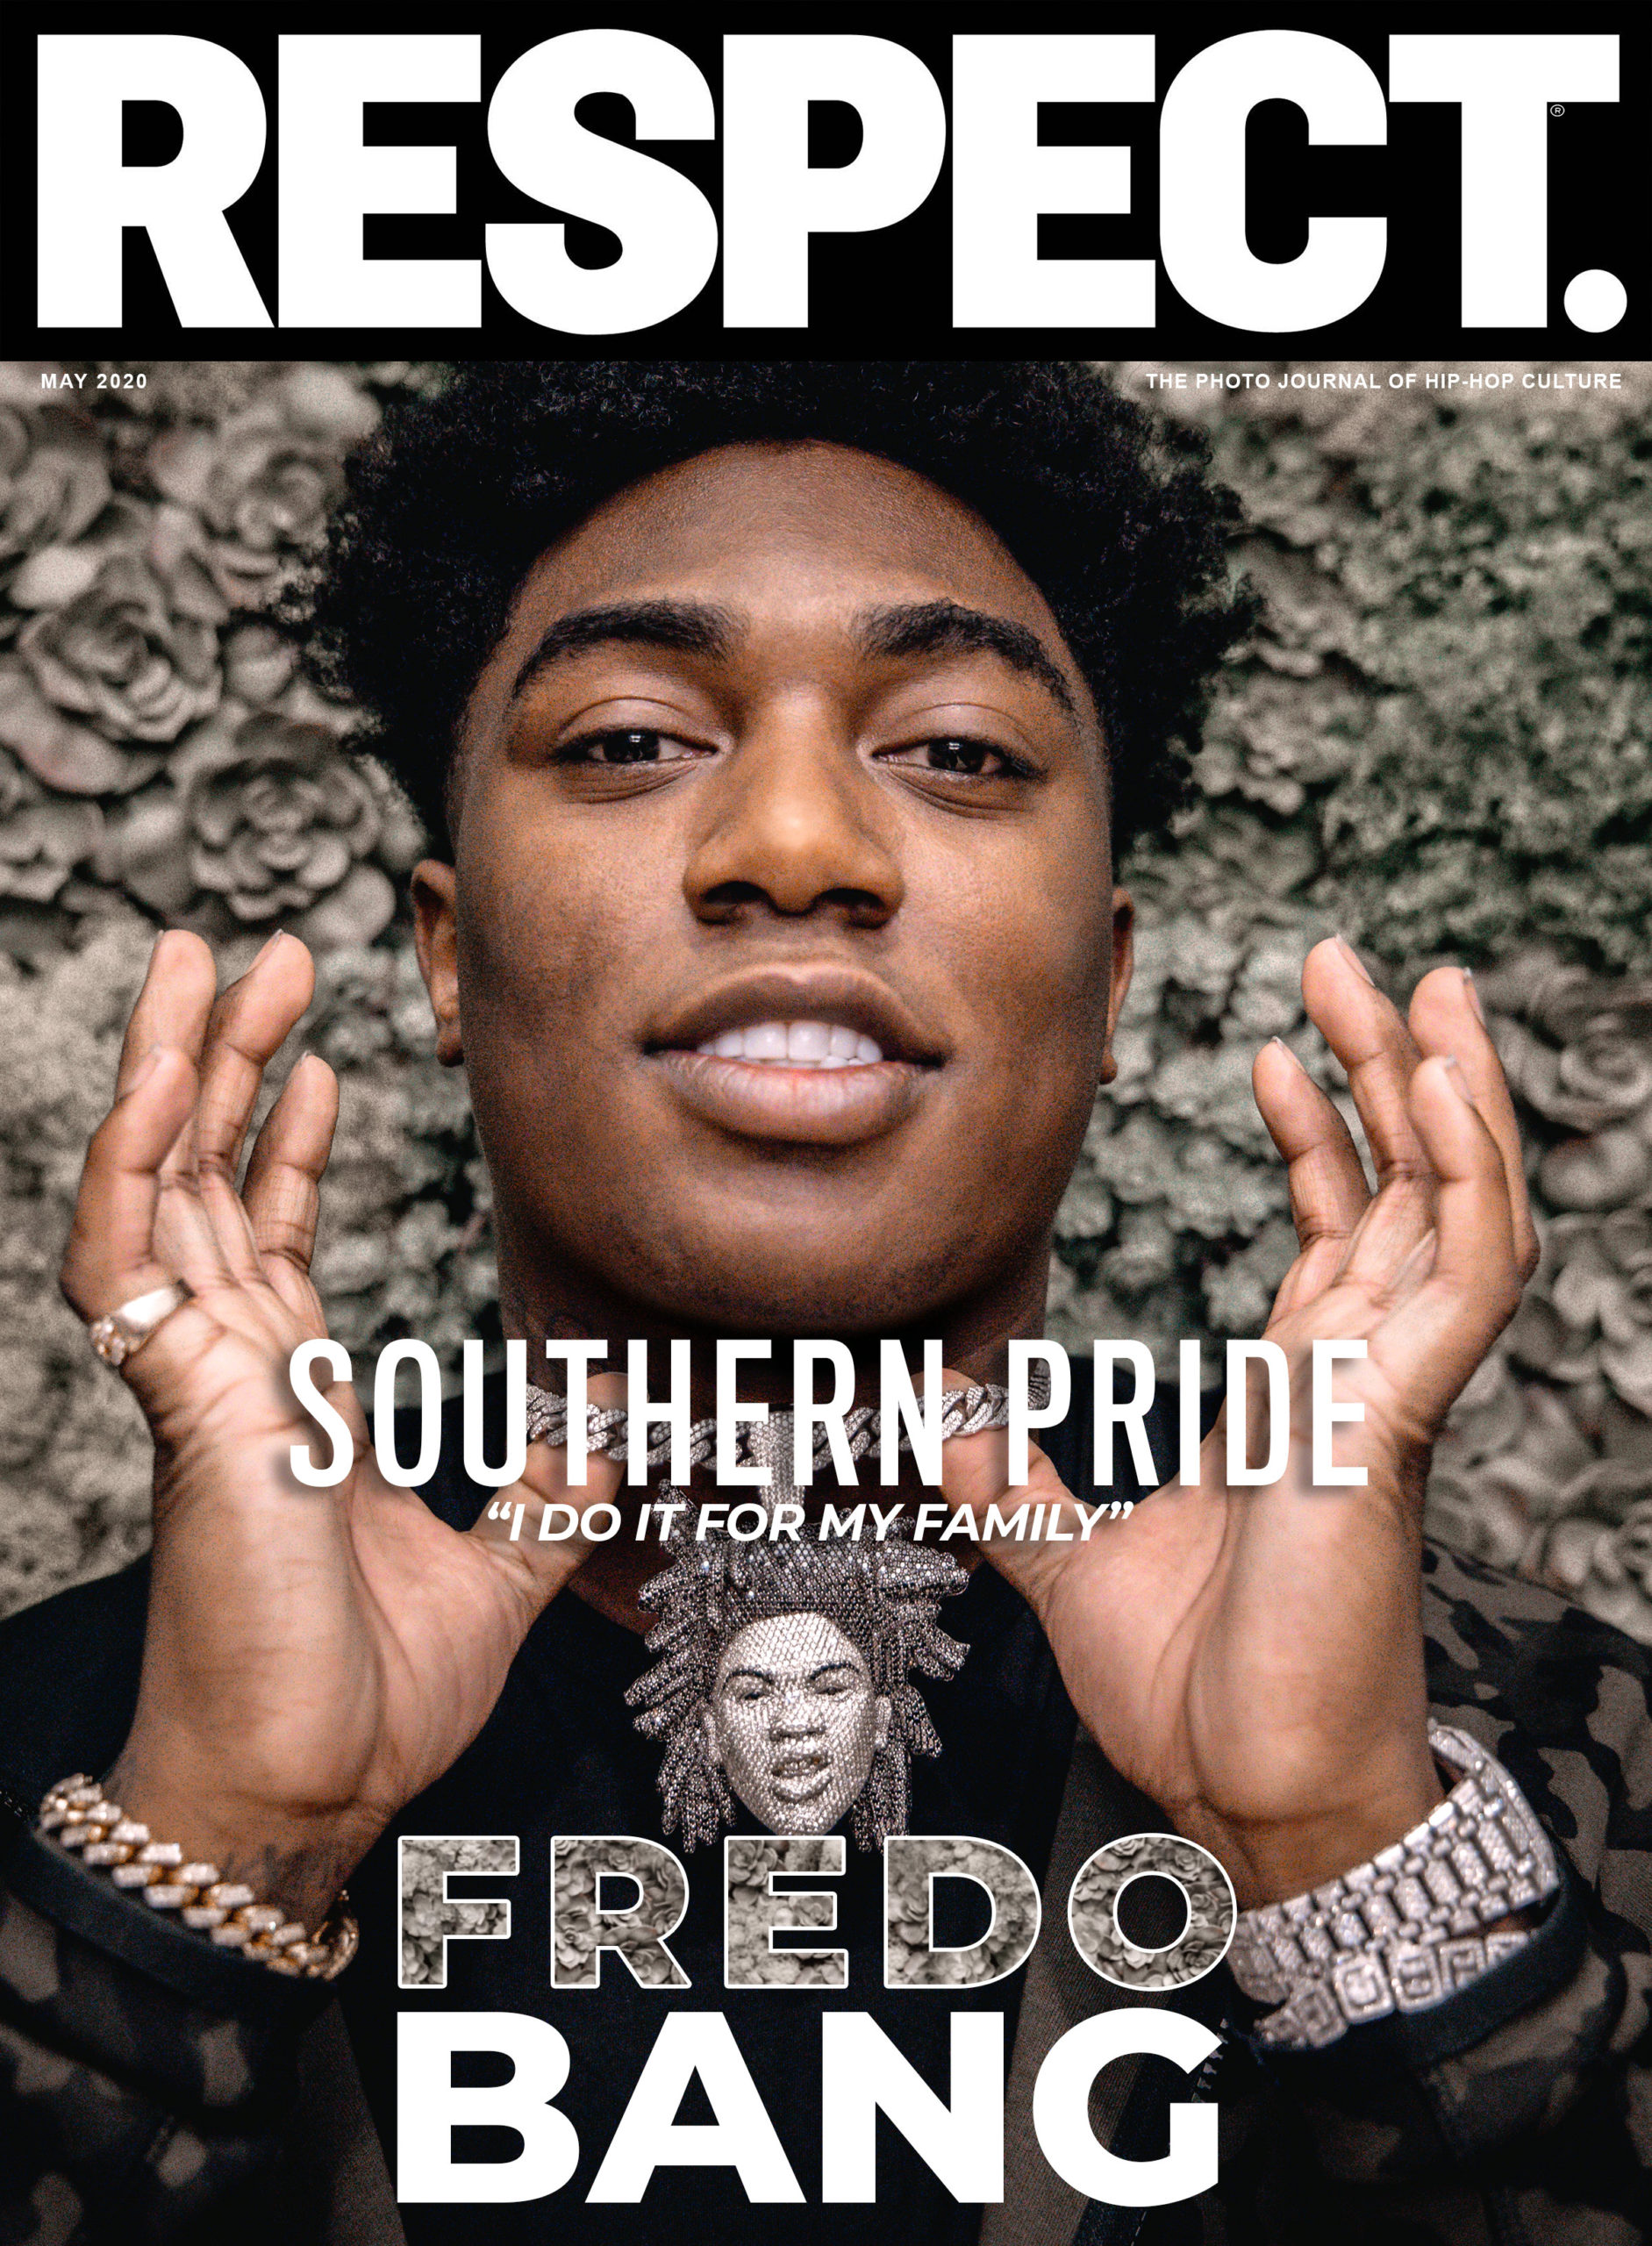 Southern Journal Magazine